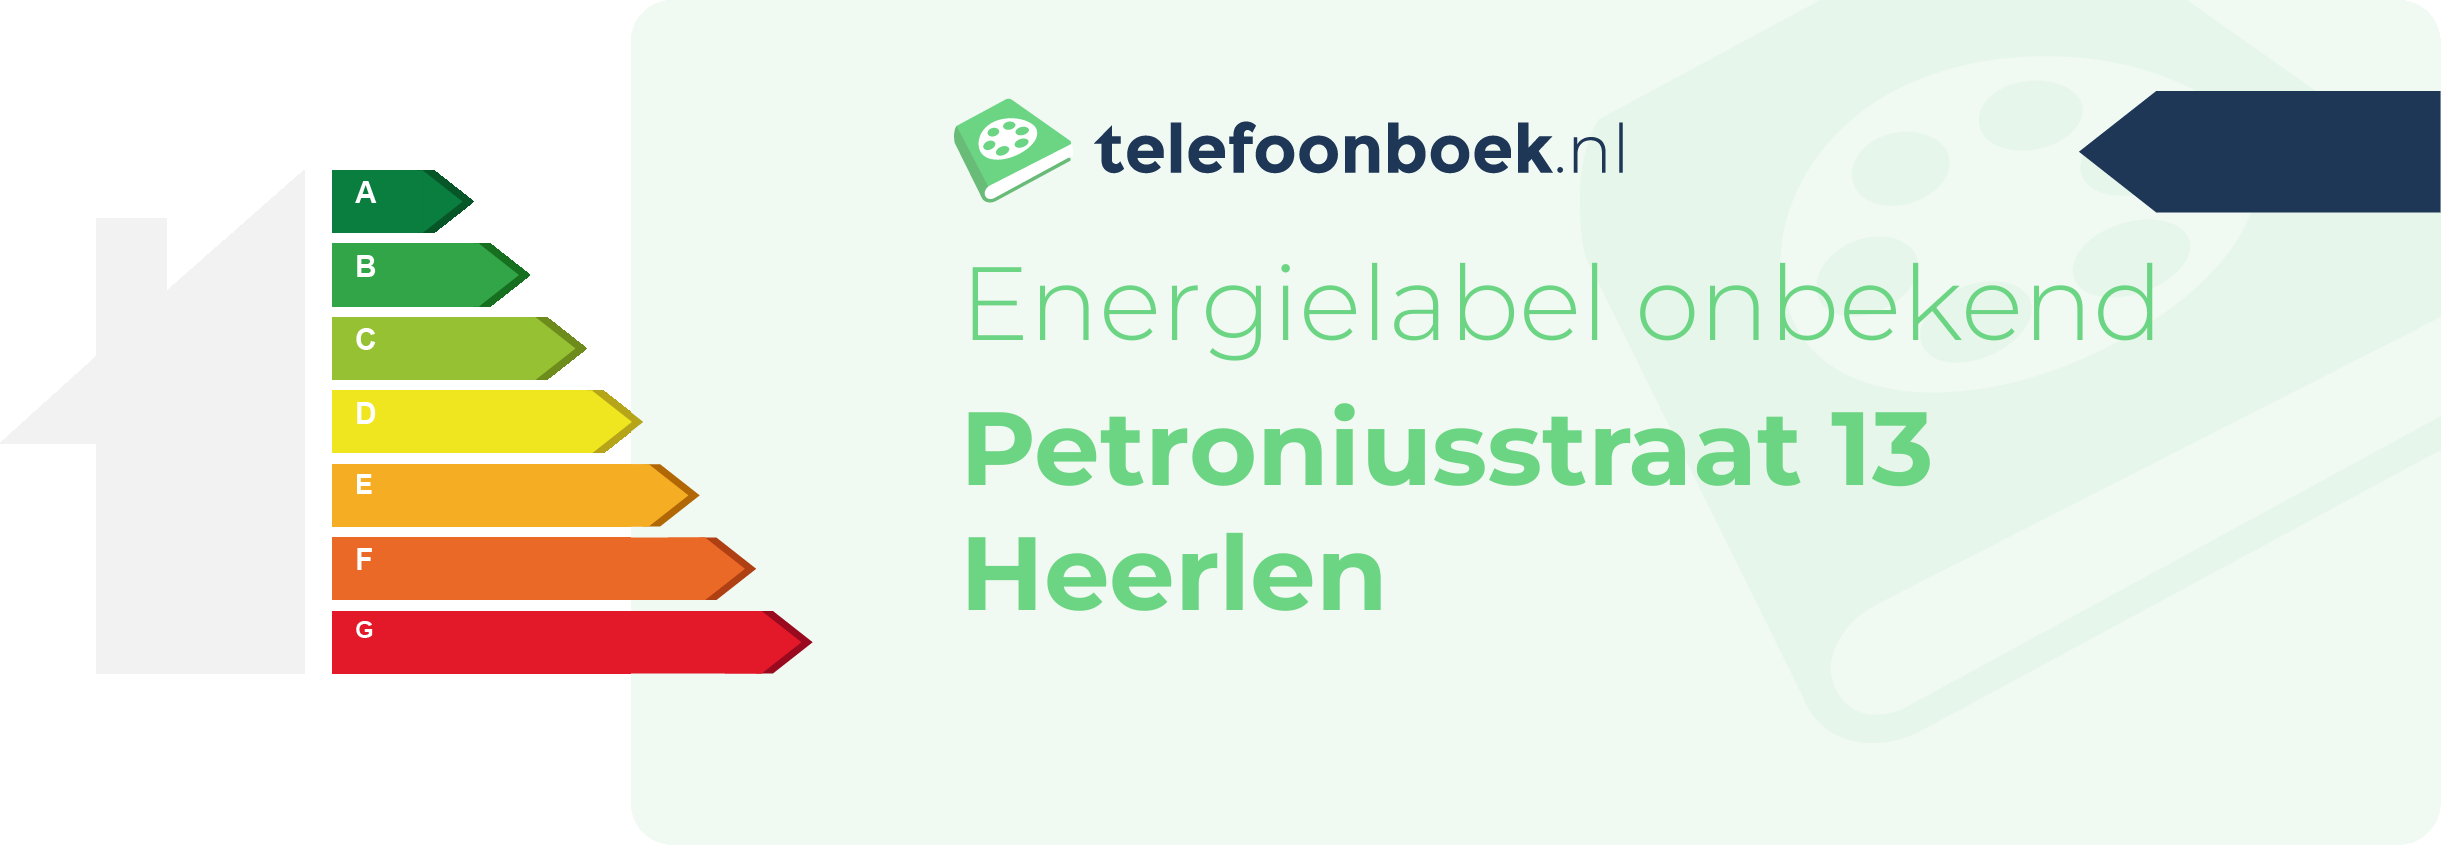 Energielabel Petroniusstraat 13 Heerlen